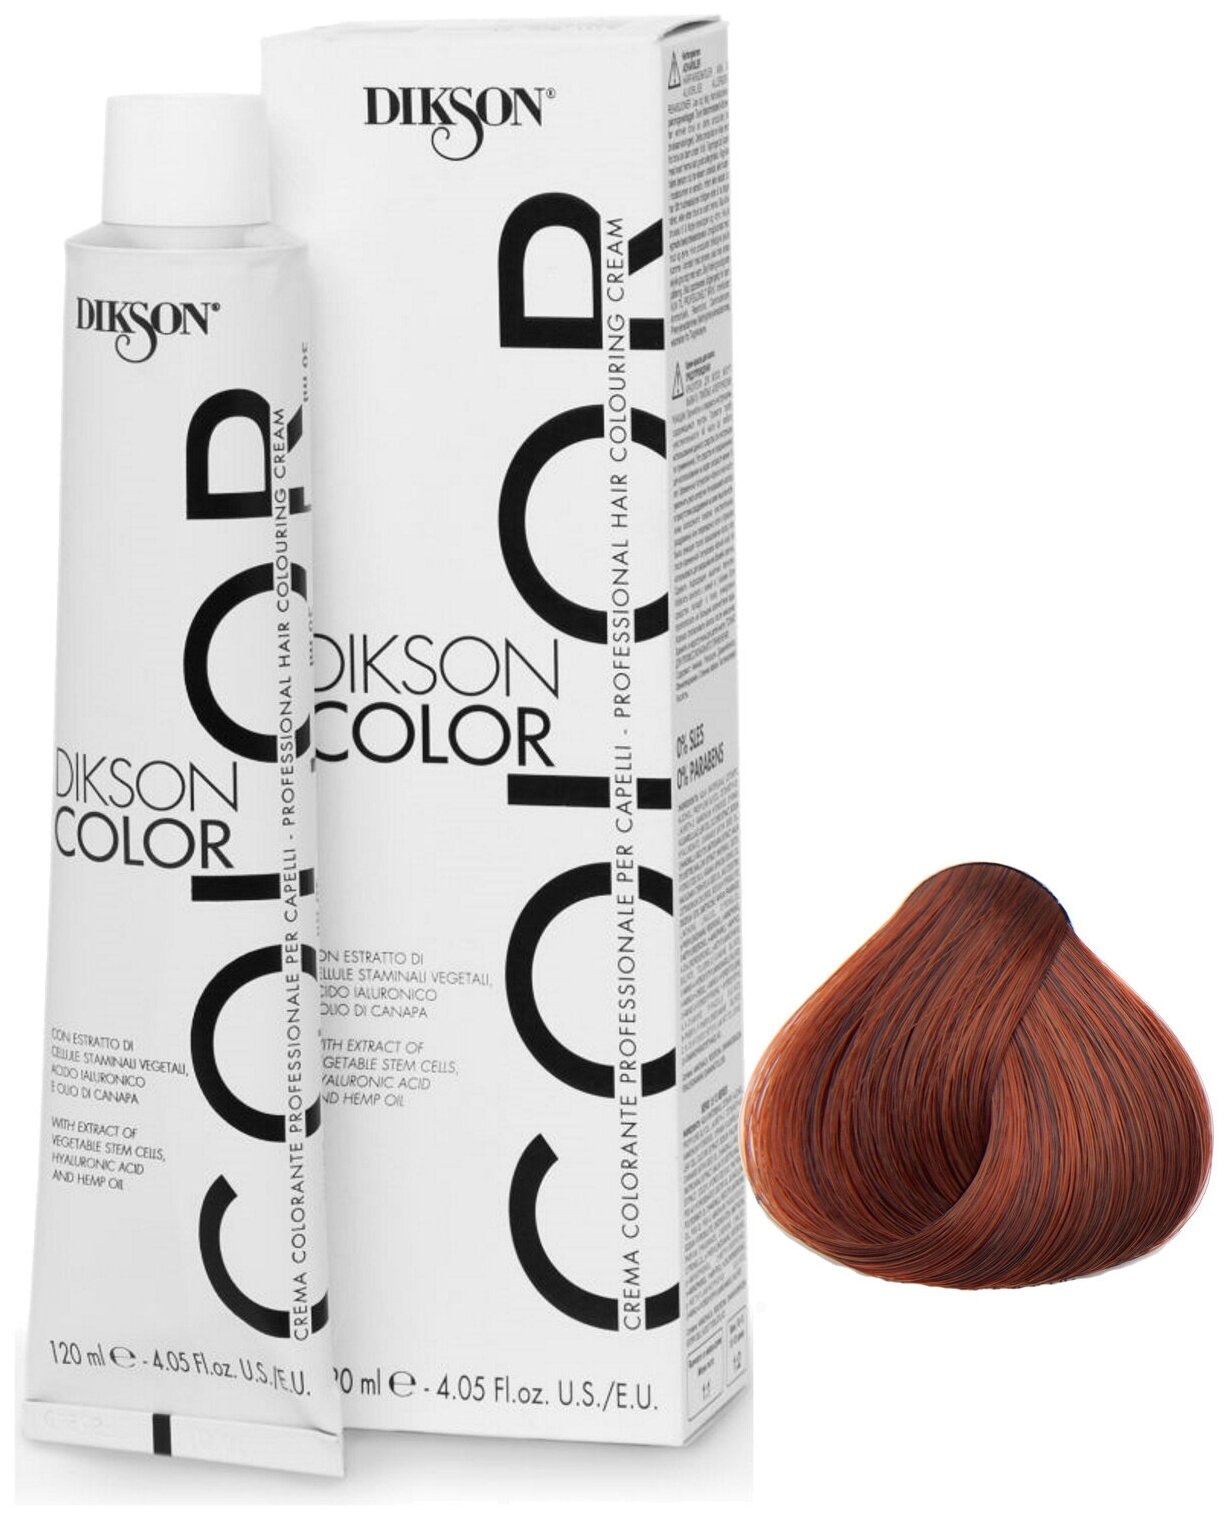 Крем-краска COLOR для окрашивания волос DIKSON 6.4 темно-русый с медным оттенком 120 мл